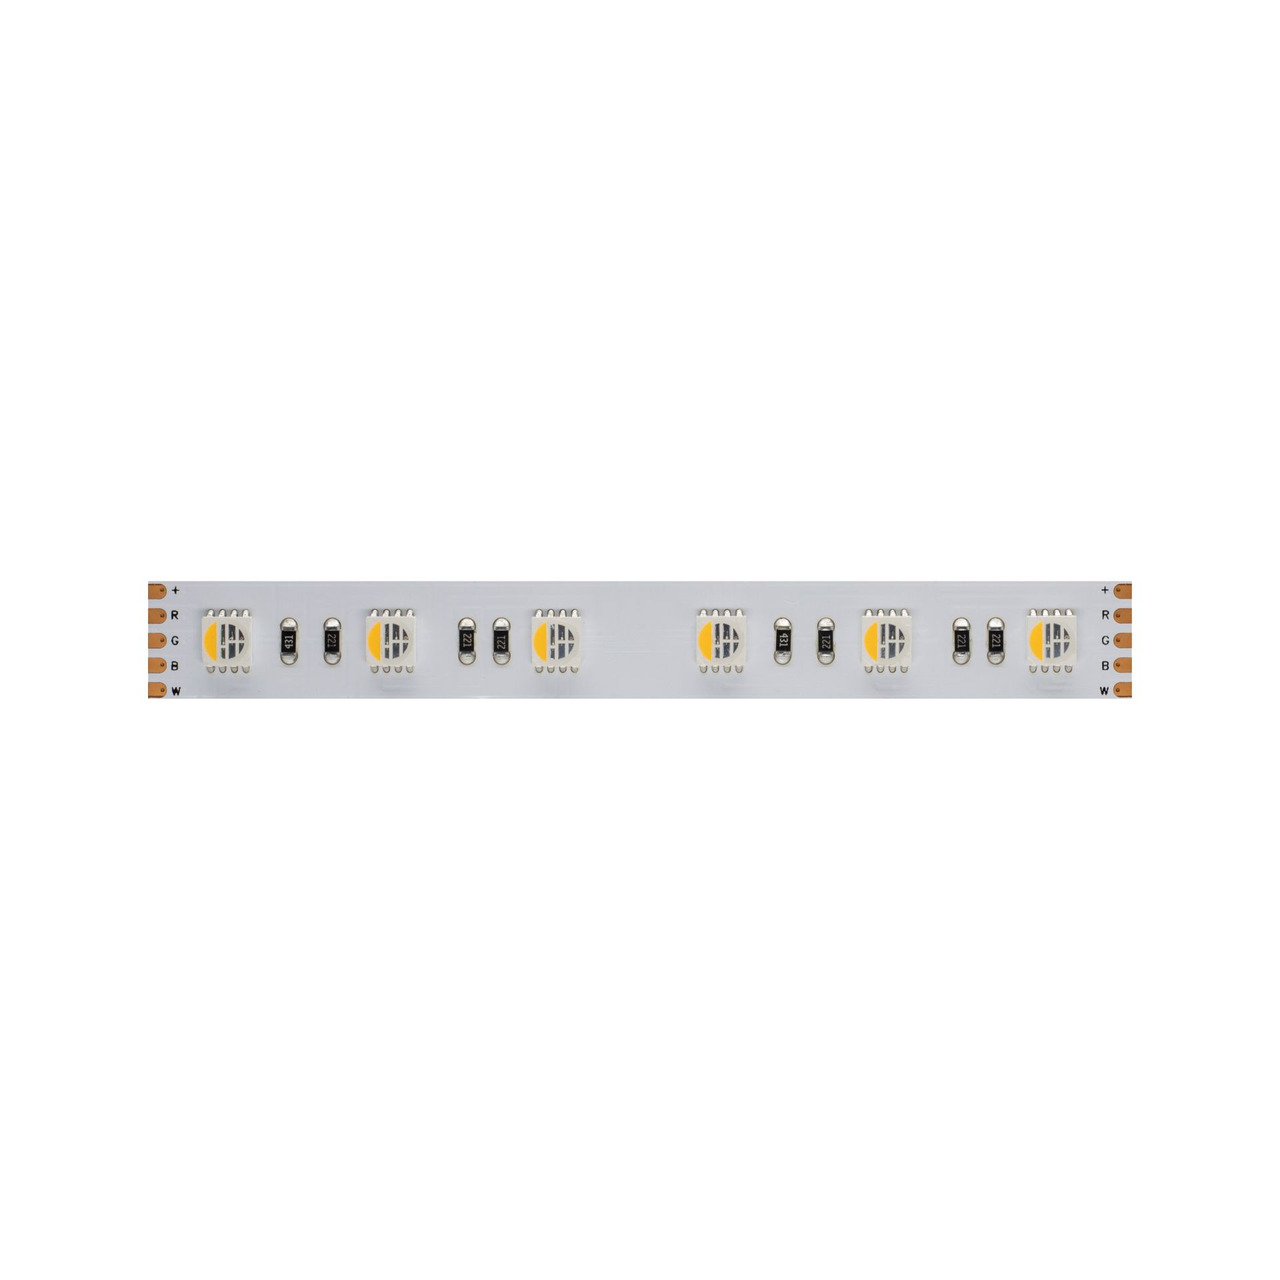 Beneito 5-m-LED-Streifen FINE-47- 72 W- 24 V DC- RGBW (3000 K)- 14-4 W-m- 691 lm-m- 60 LEDs-m- IP20